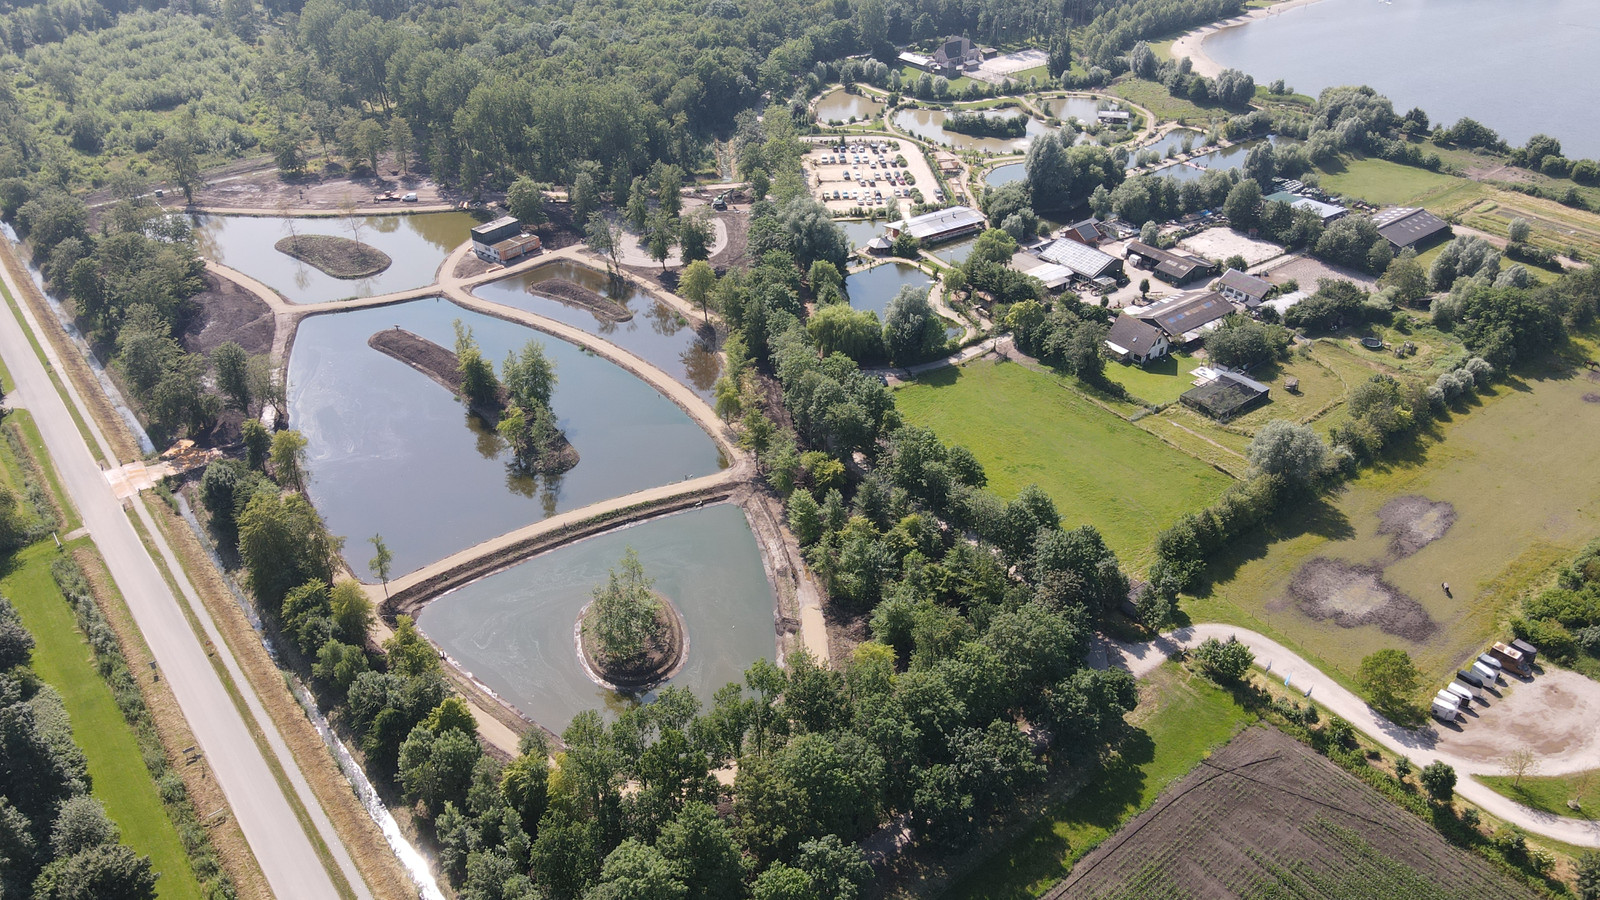 Toms Creek vispark in Lelystad bestemmingswijziging